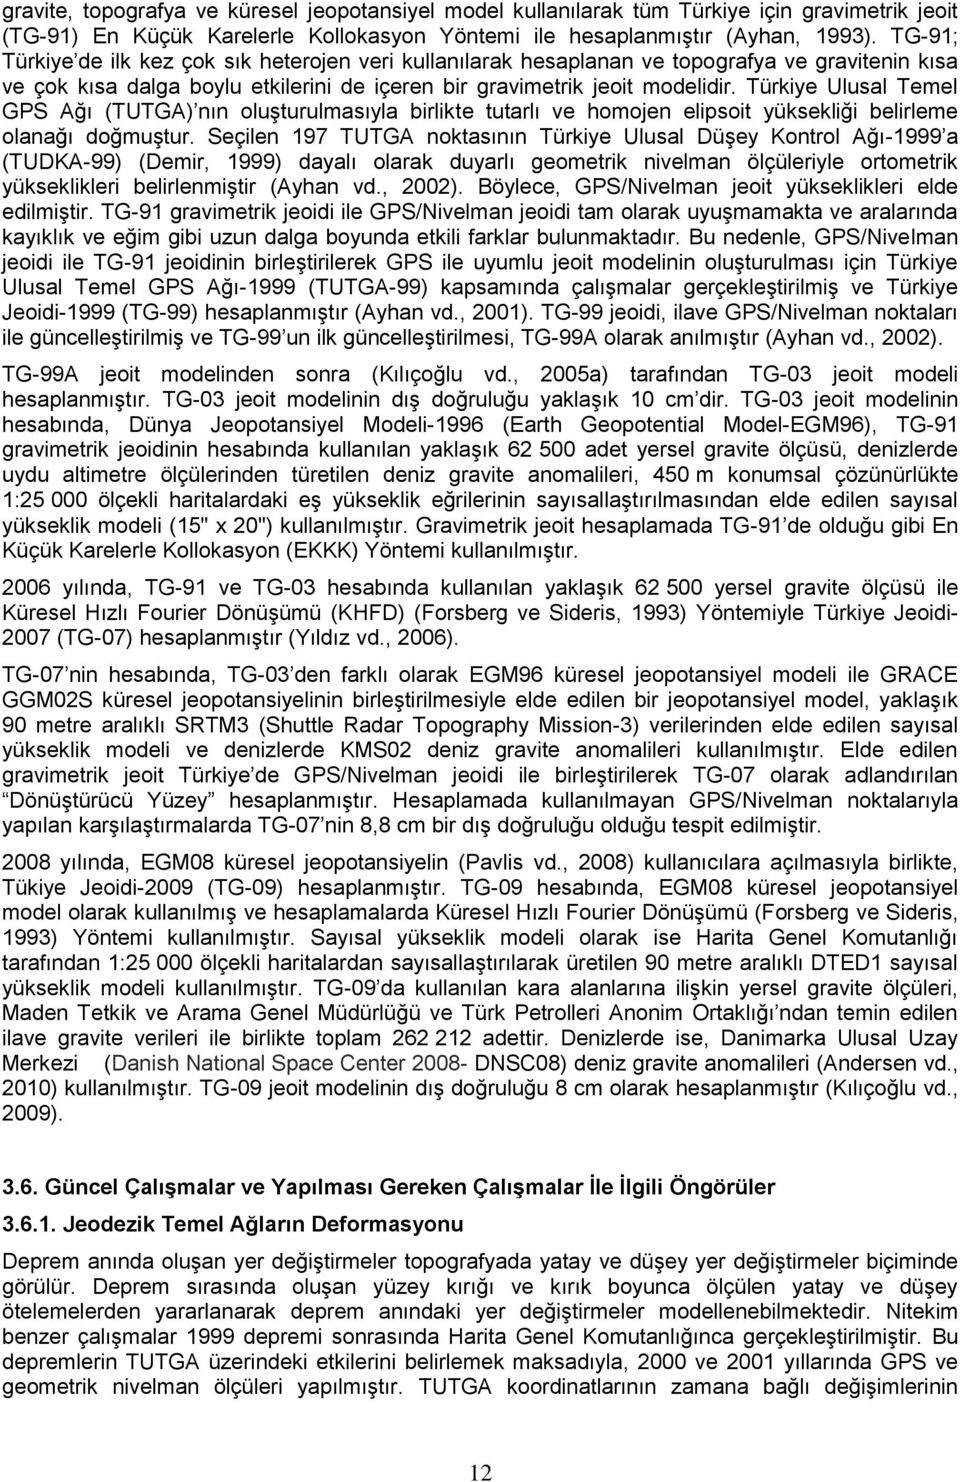 Türkiye Ulusal Temel GPS Ağı (TUTGA) nın oluşturulmasıyla birlikte tutarlı ve homojen elipsoit yüksekliği belirleme olanağı doğmuştur.